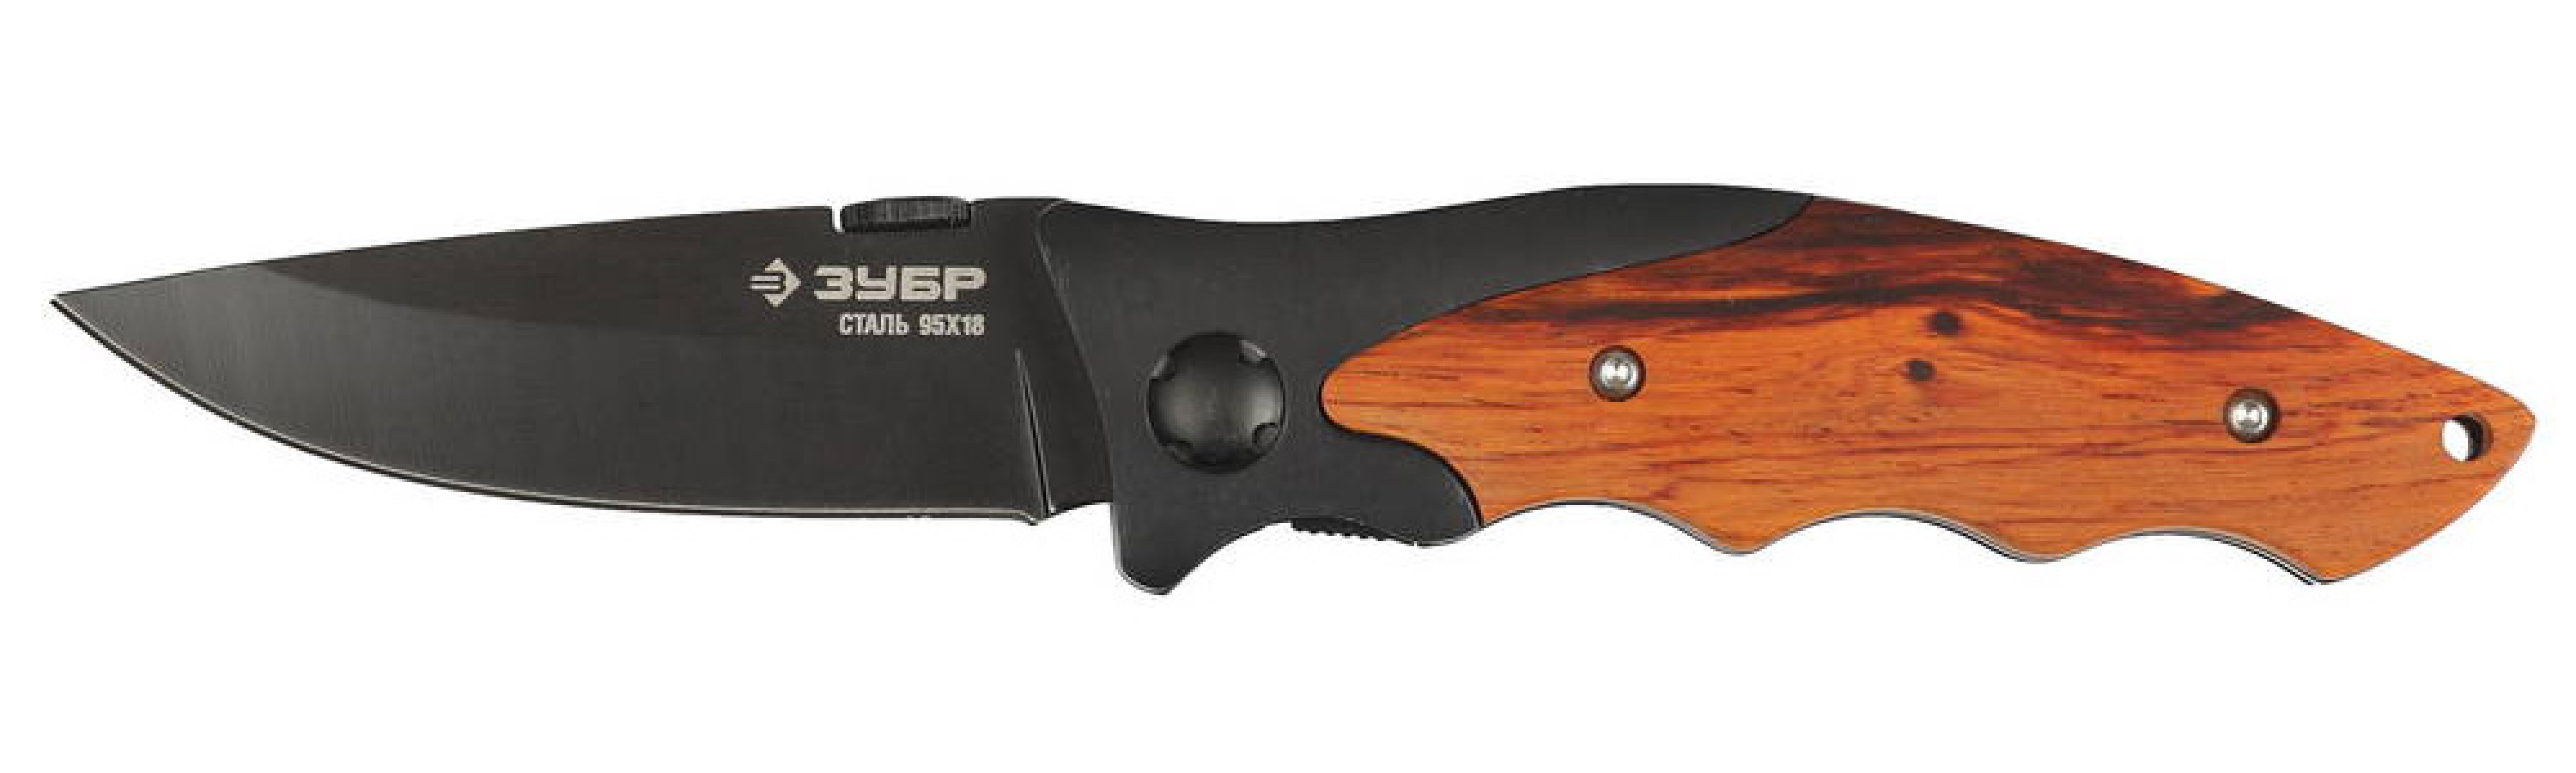 Складной нож ЗУБР Стрелец 185 мм лезвие 80 мм металлическая рукоятка с деревянными вставками (47711)Купить